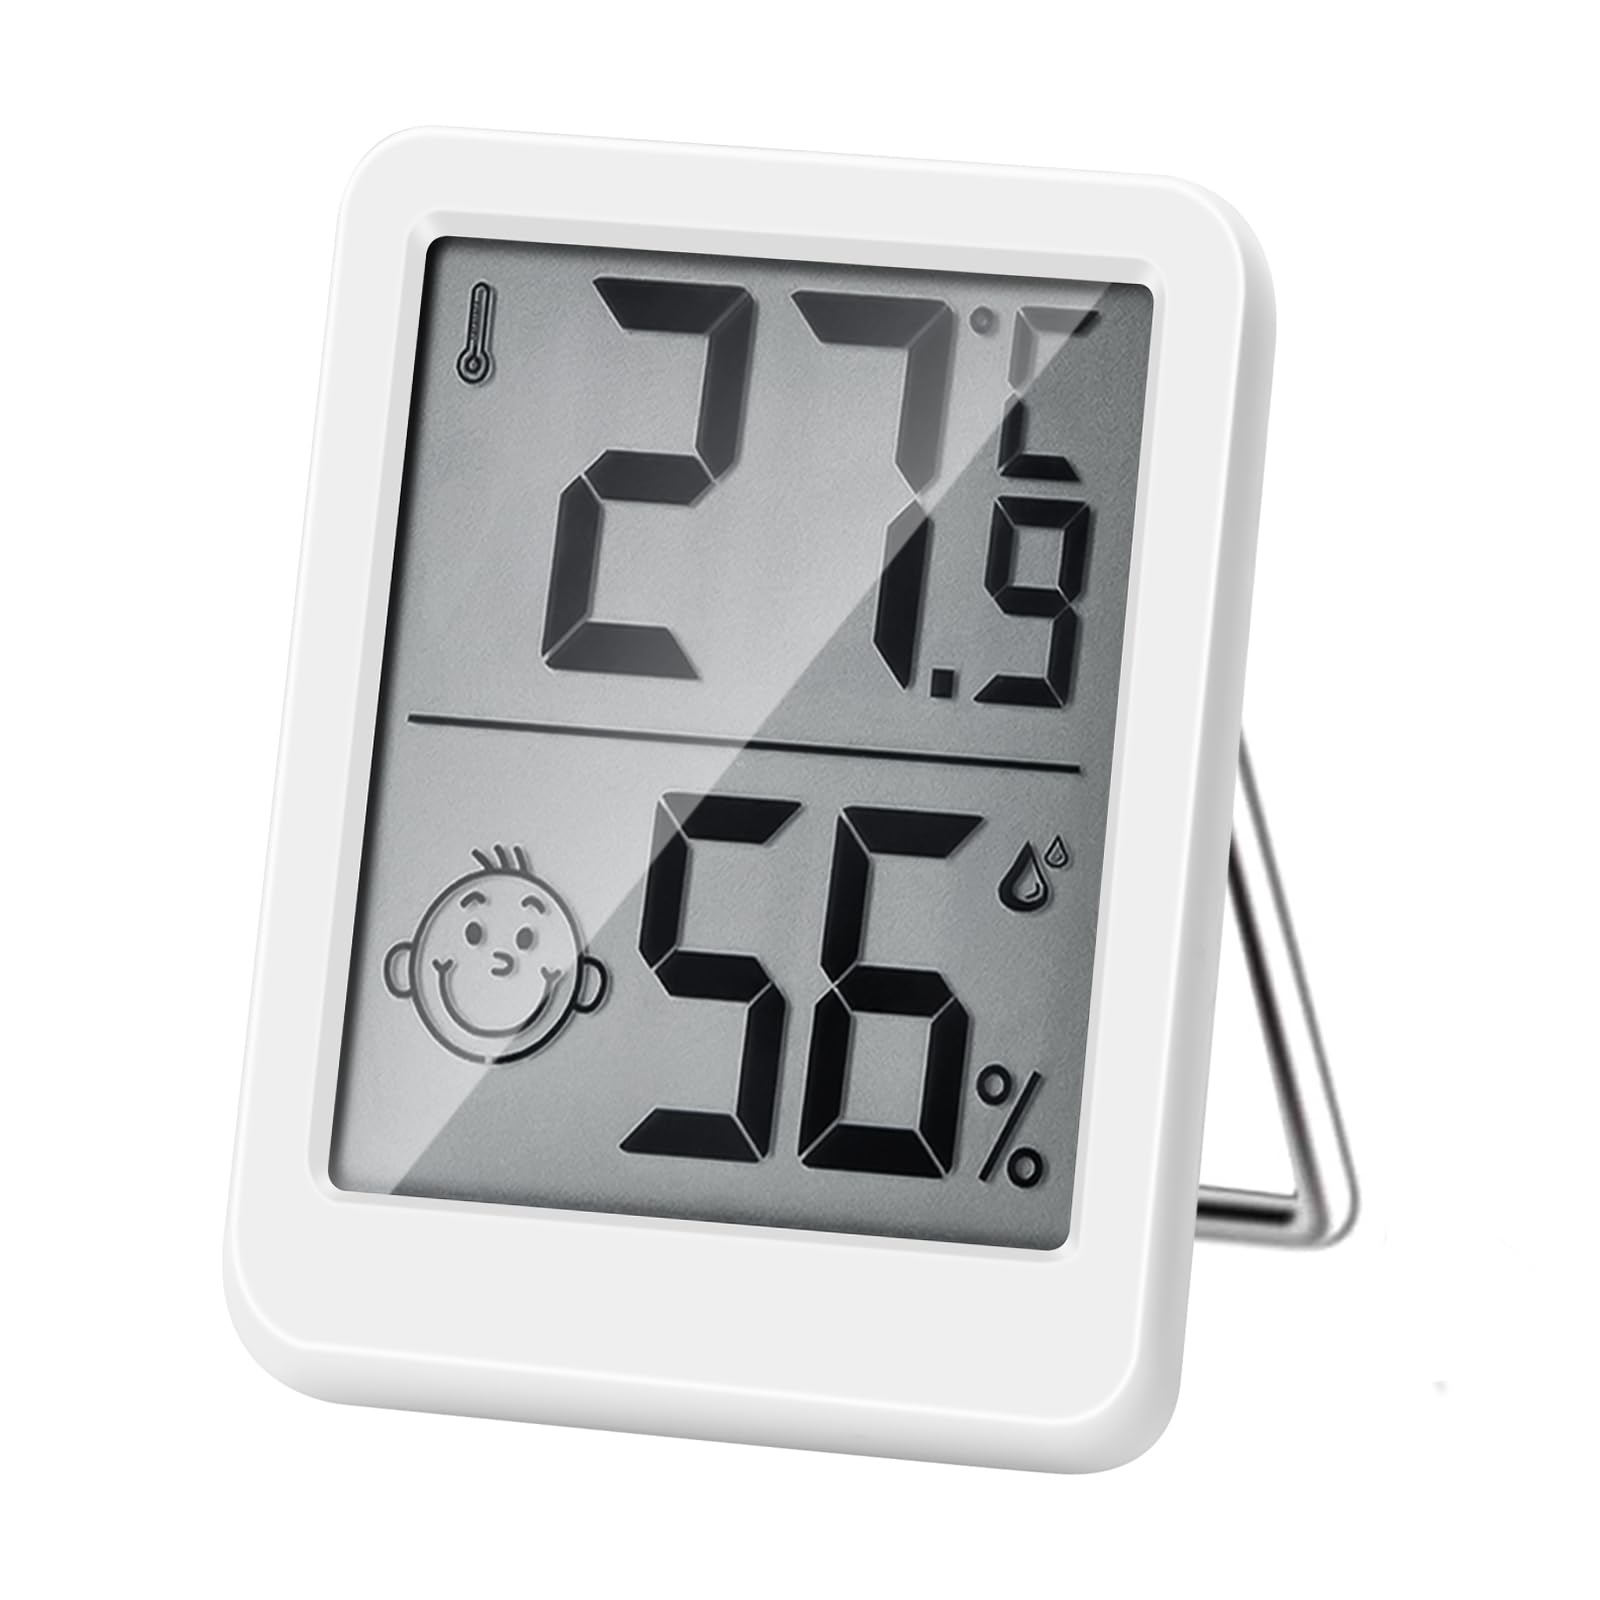 Termometro e igrometro digitale per interni ad alta precisione, monitor di  temperatura e umidità, indicatore termoigrometro